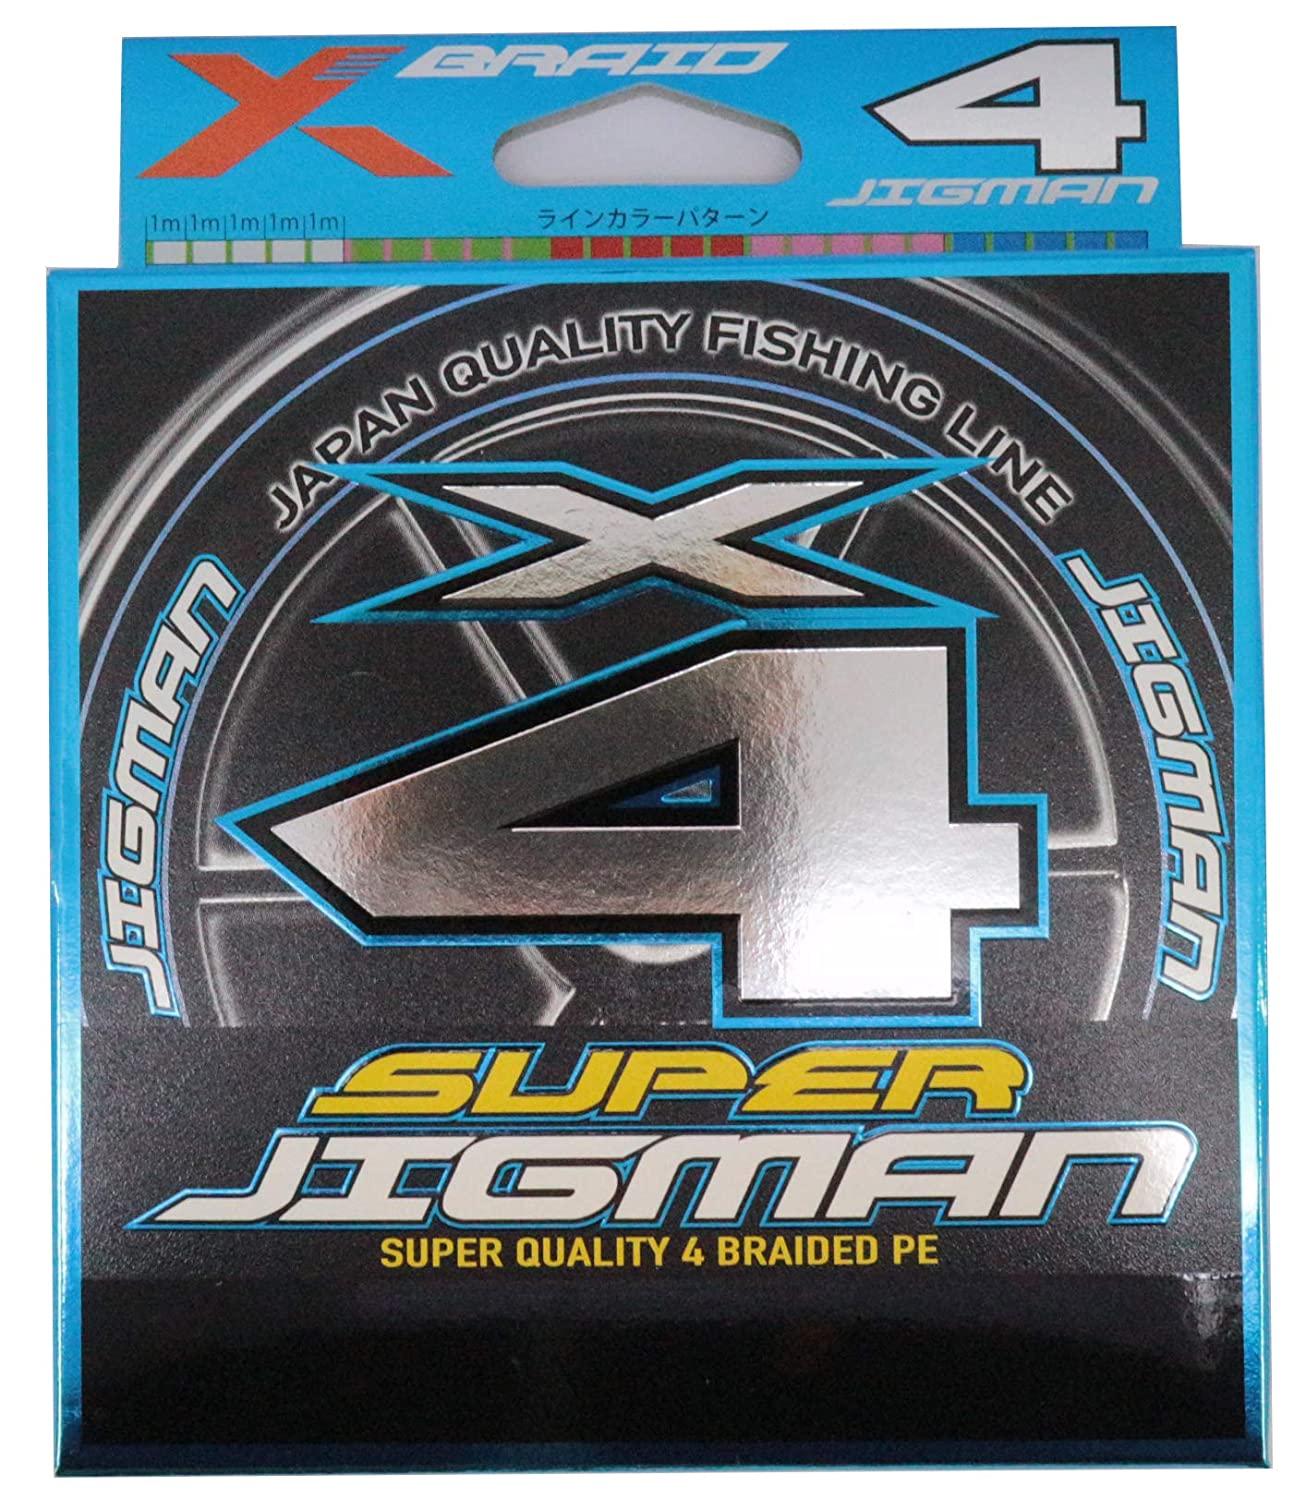  X-BRAID SUPER JIGMAN X4 300m 4 50lb